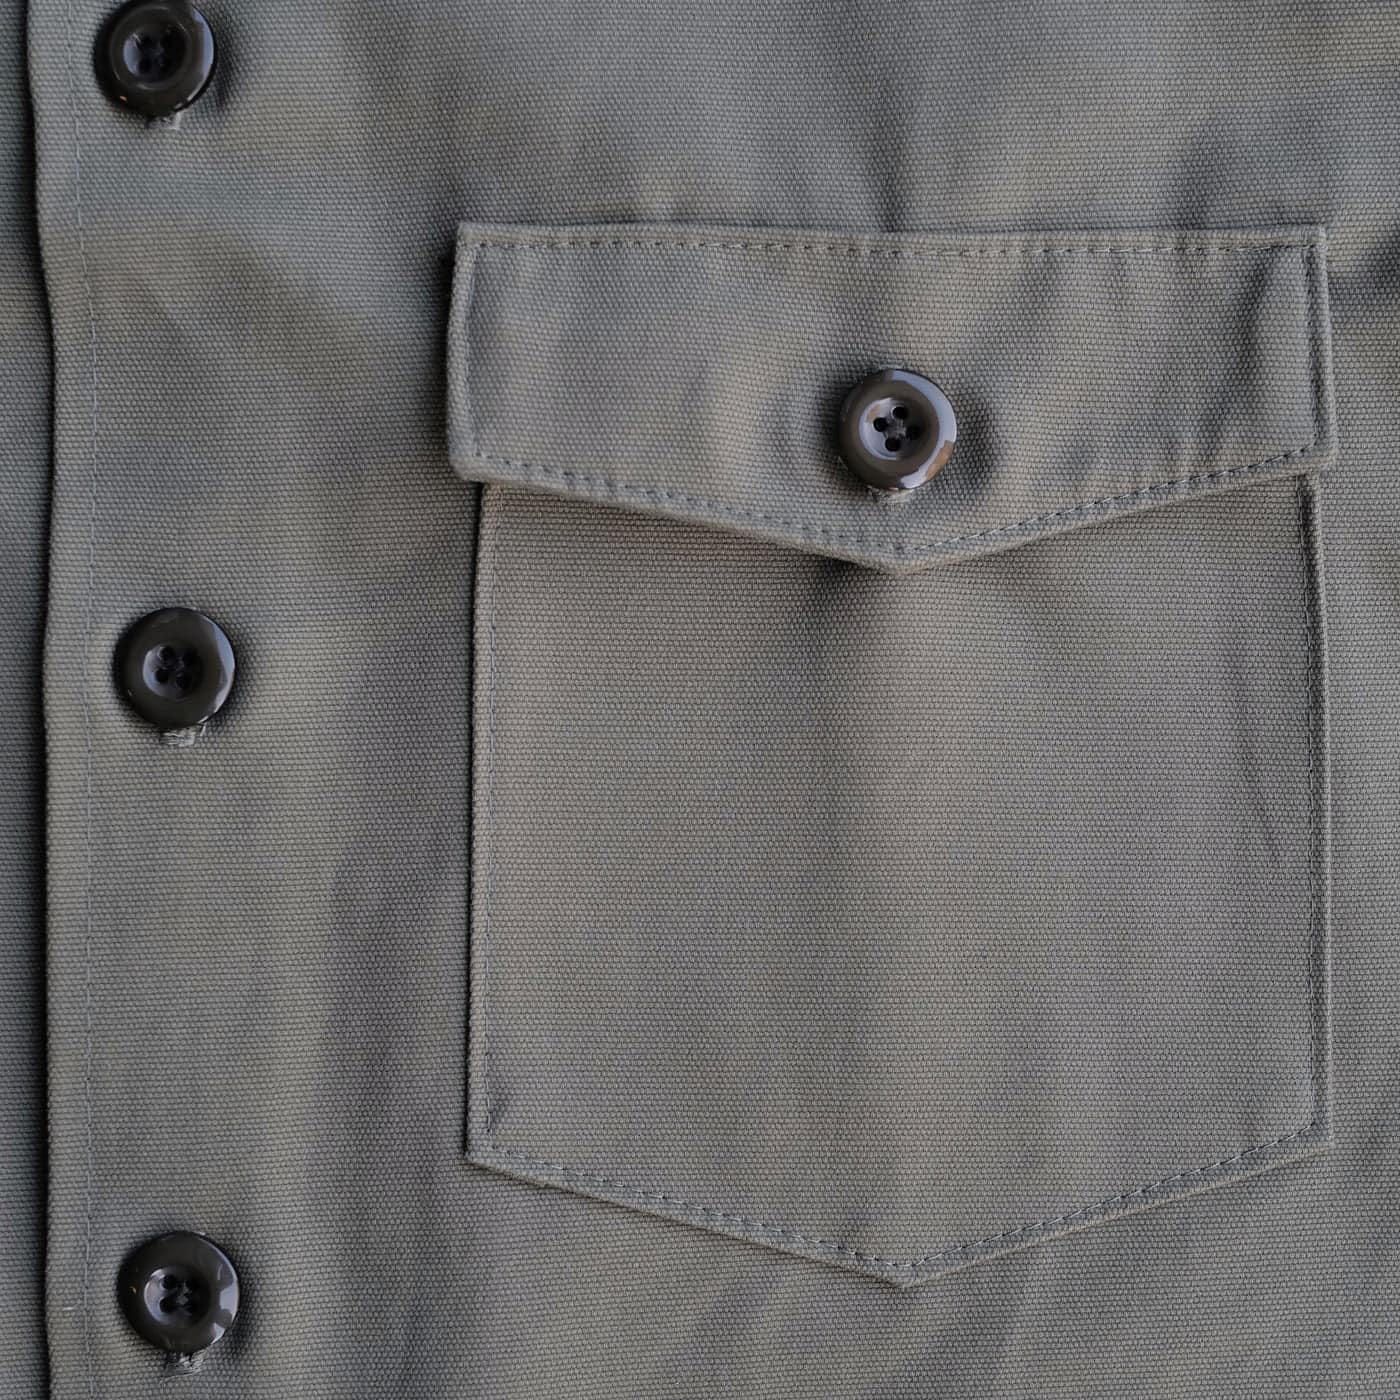 Watches, Stories, & Gear: A Proper Shirt Jacket from STANDARD H ...